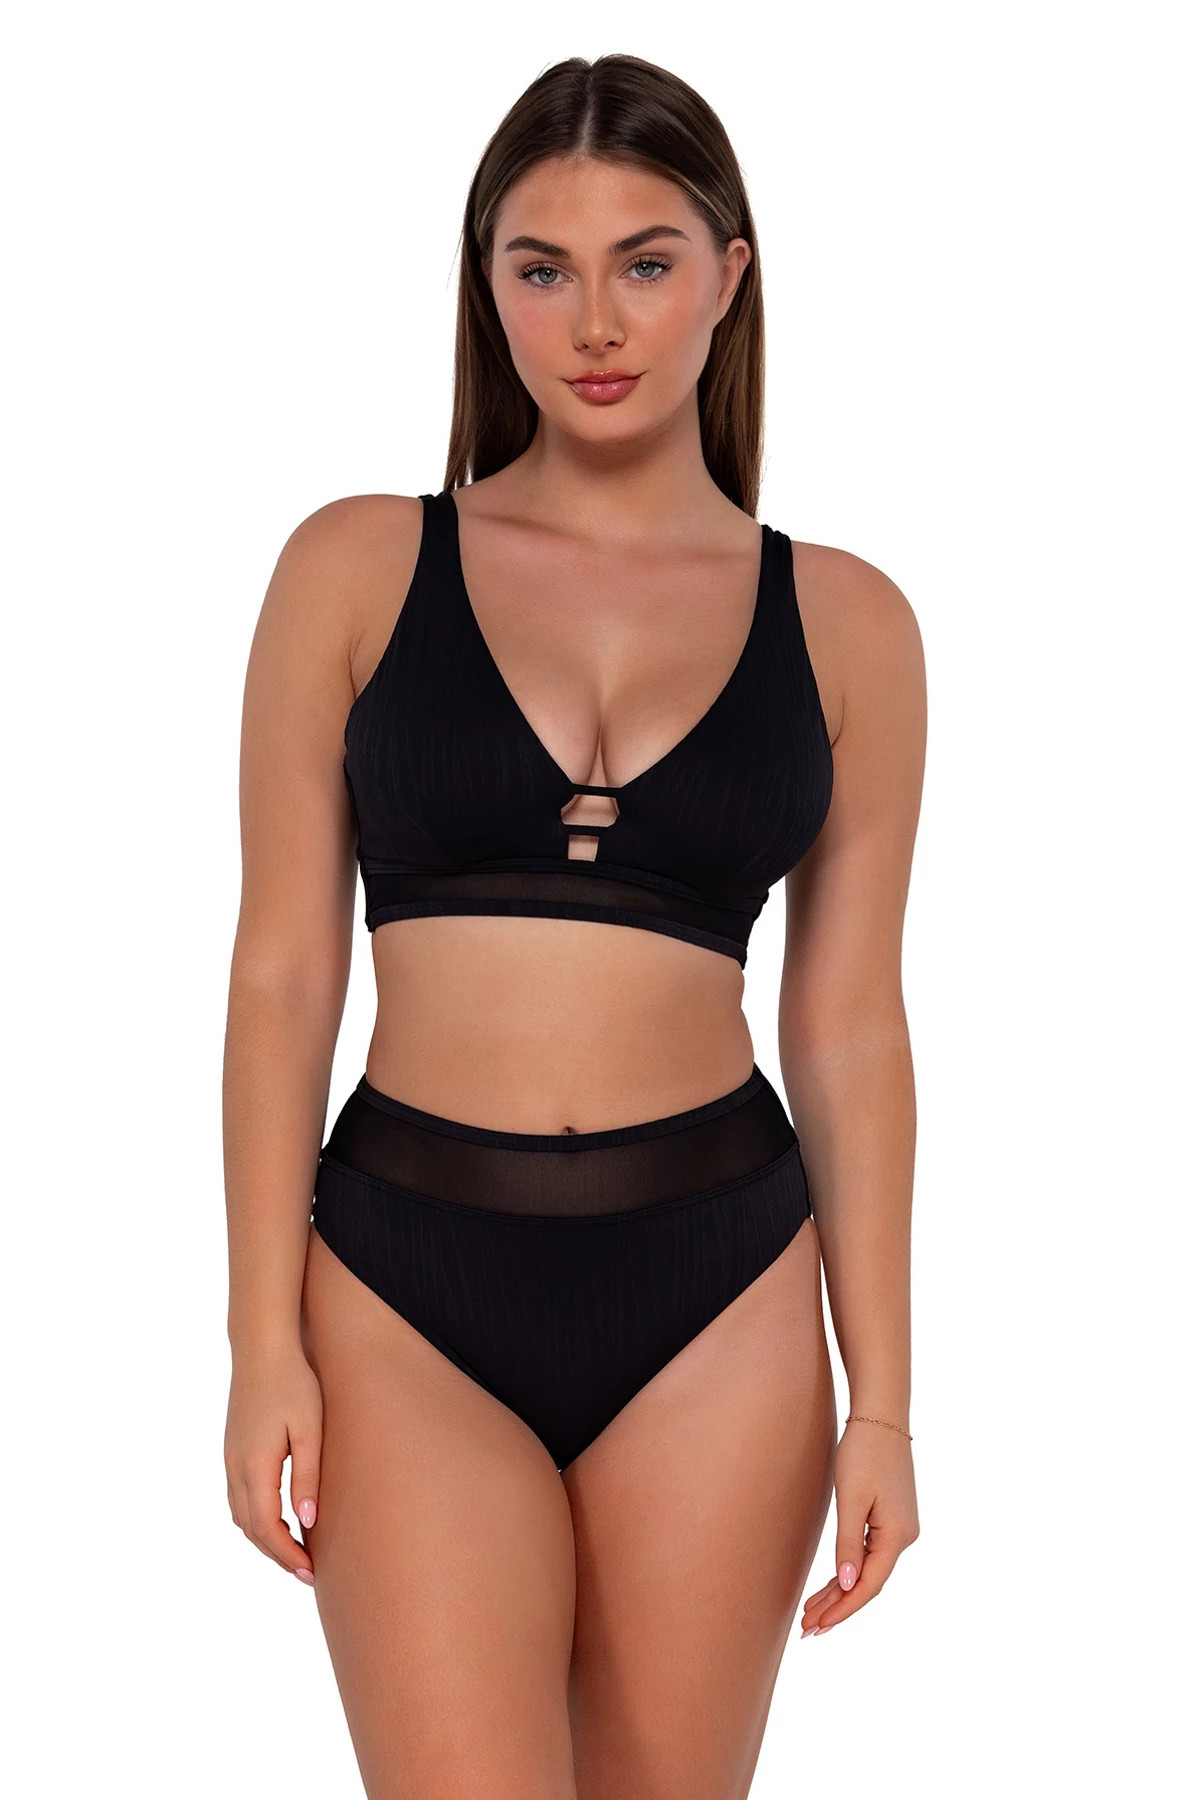 BLACK SEAGRASS TEXTURE Danica Underwire Bikini Top (E-H Cup) image number 1